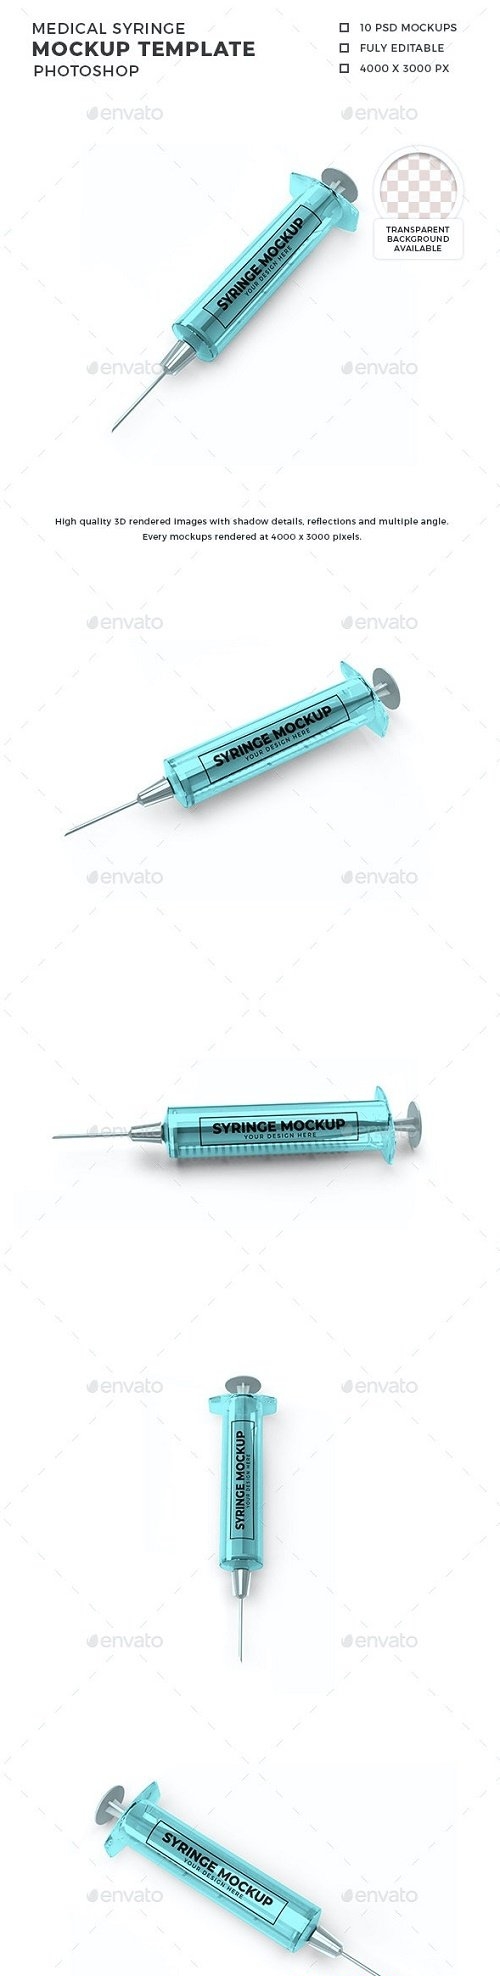 Medical Syringe Mockup Template Set 30362157